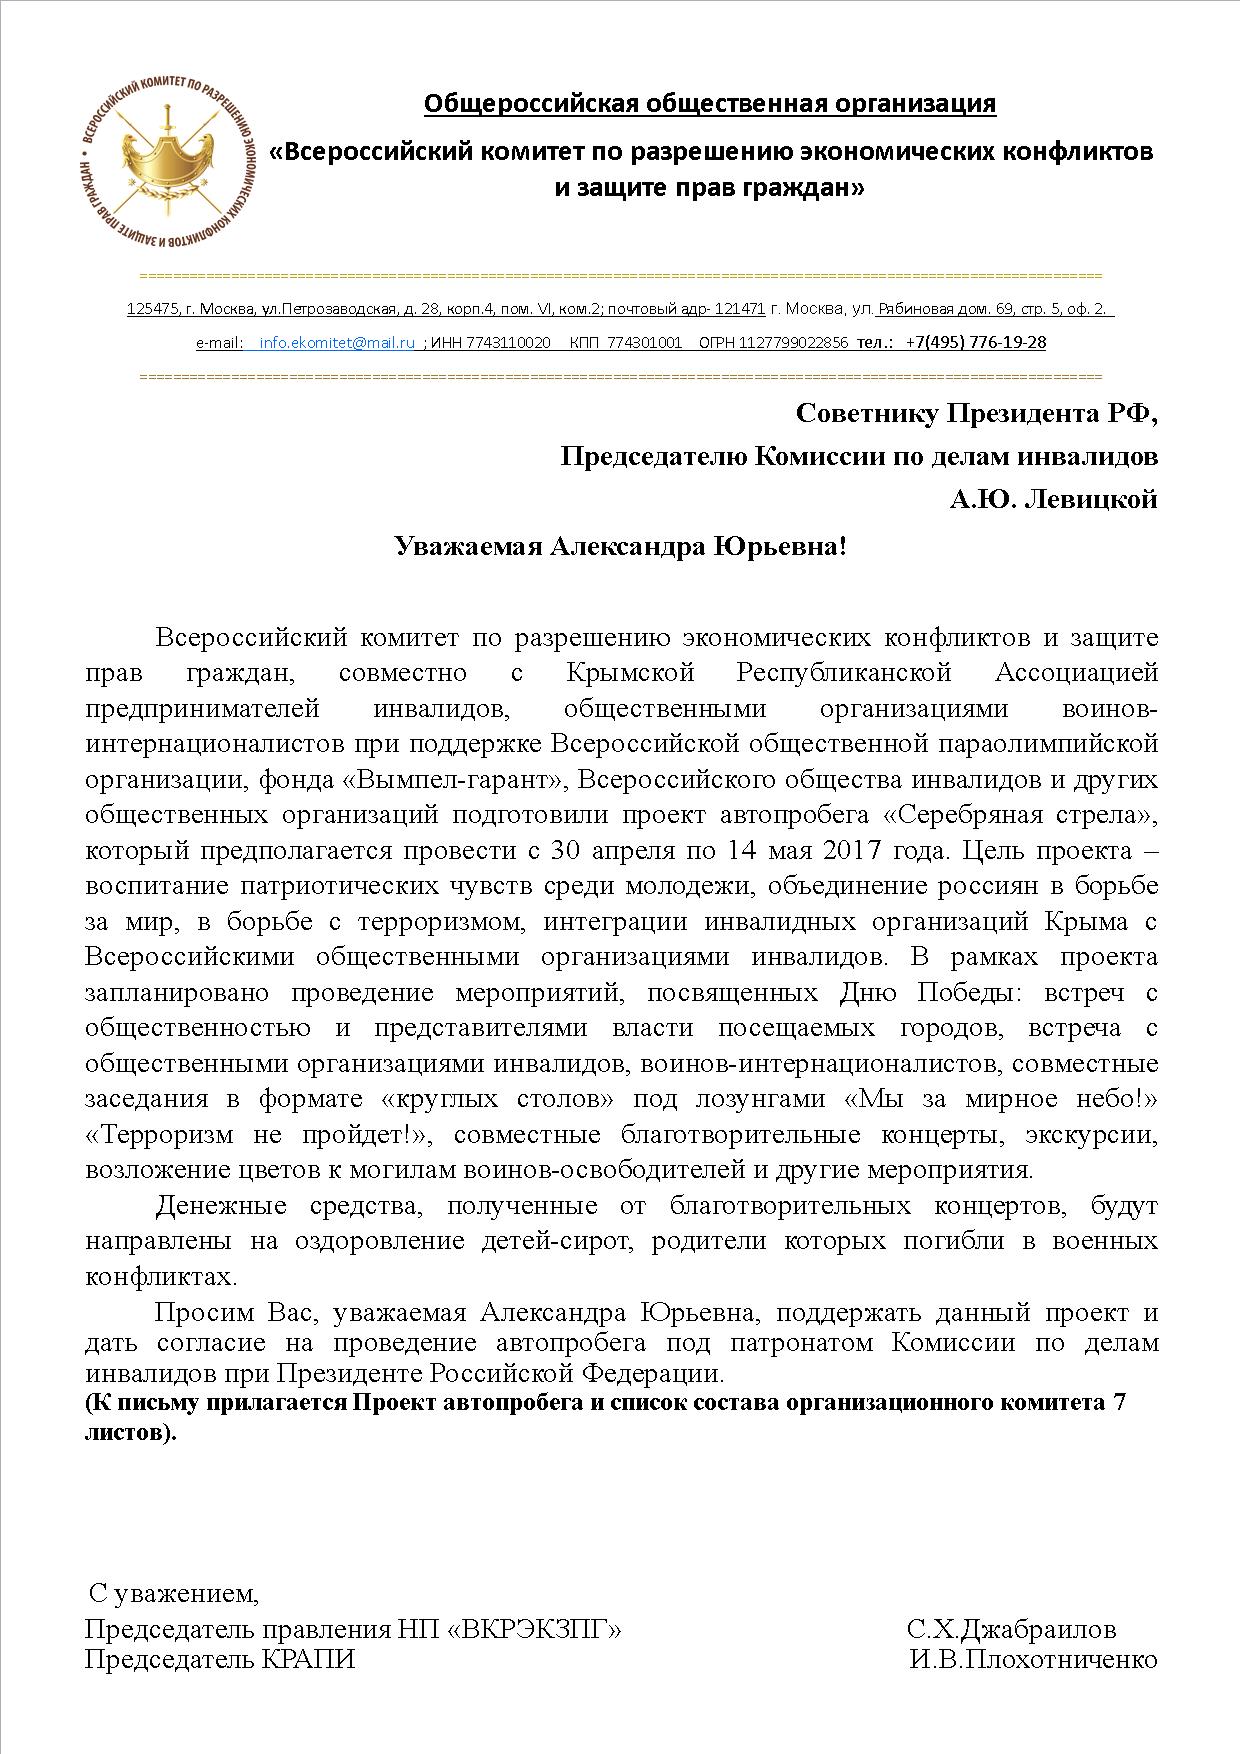 Администрация Президента Российской Федерации поддержала проект автопробега «Серебряная стрела»